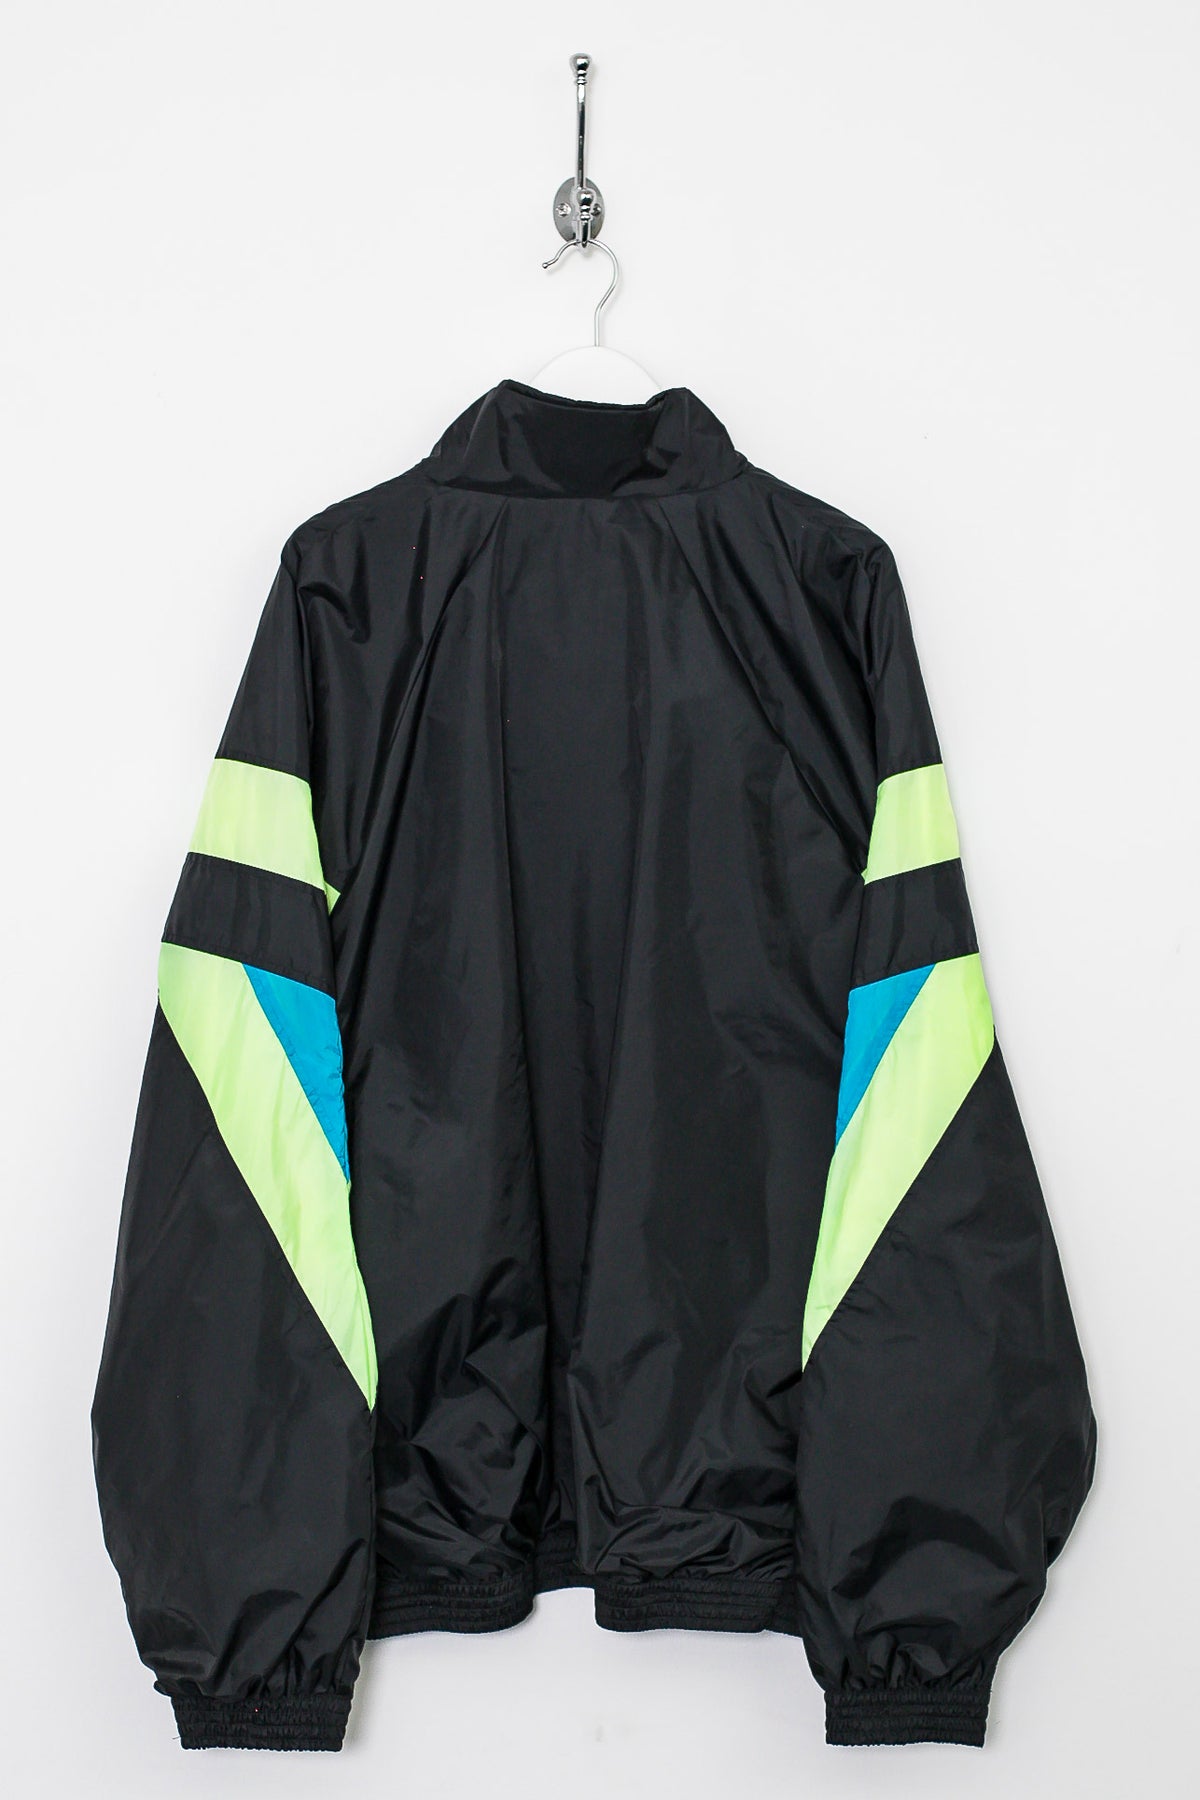 90s Umbro Jacket (XL)